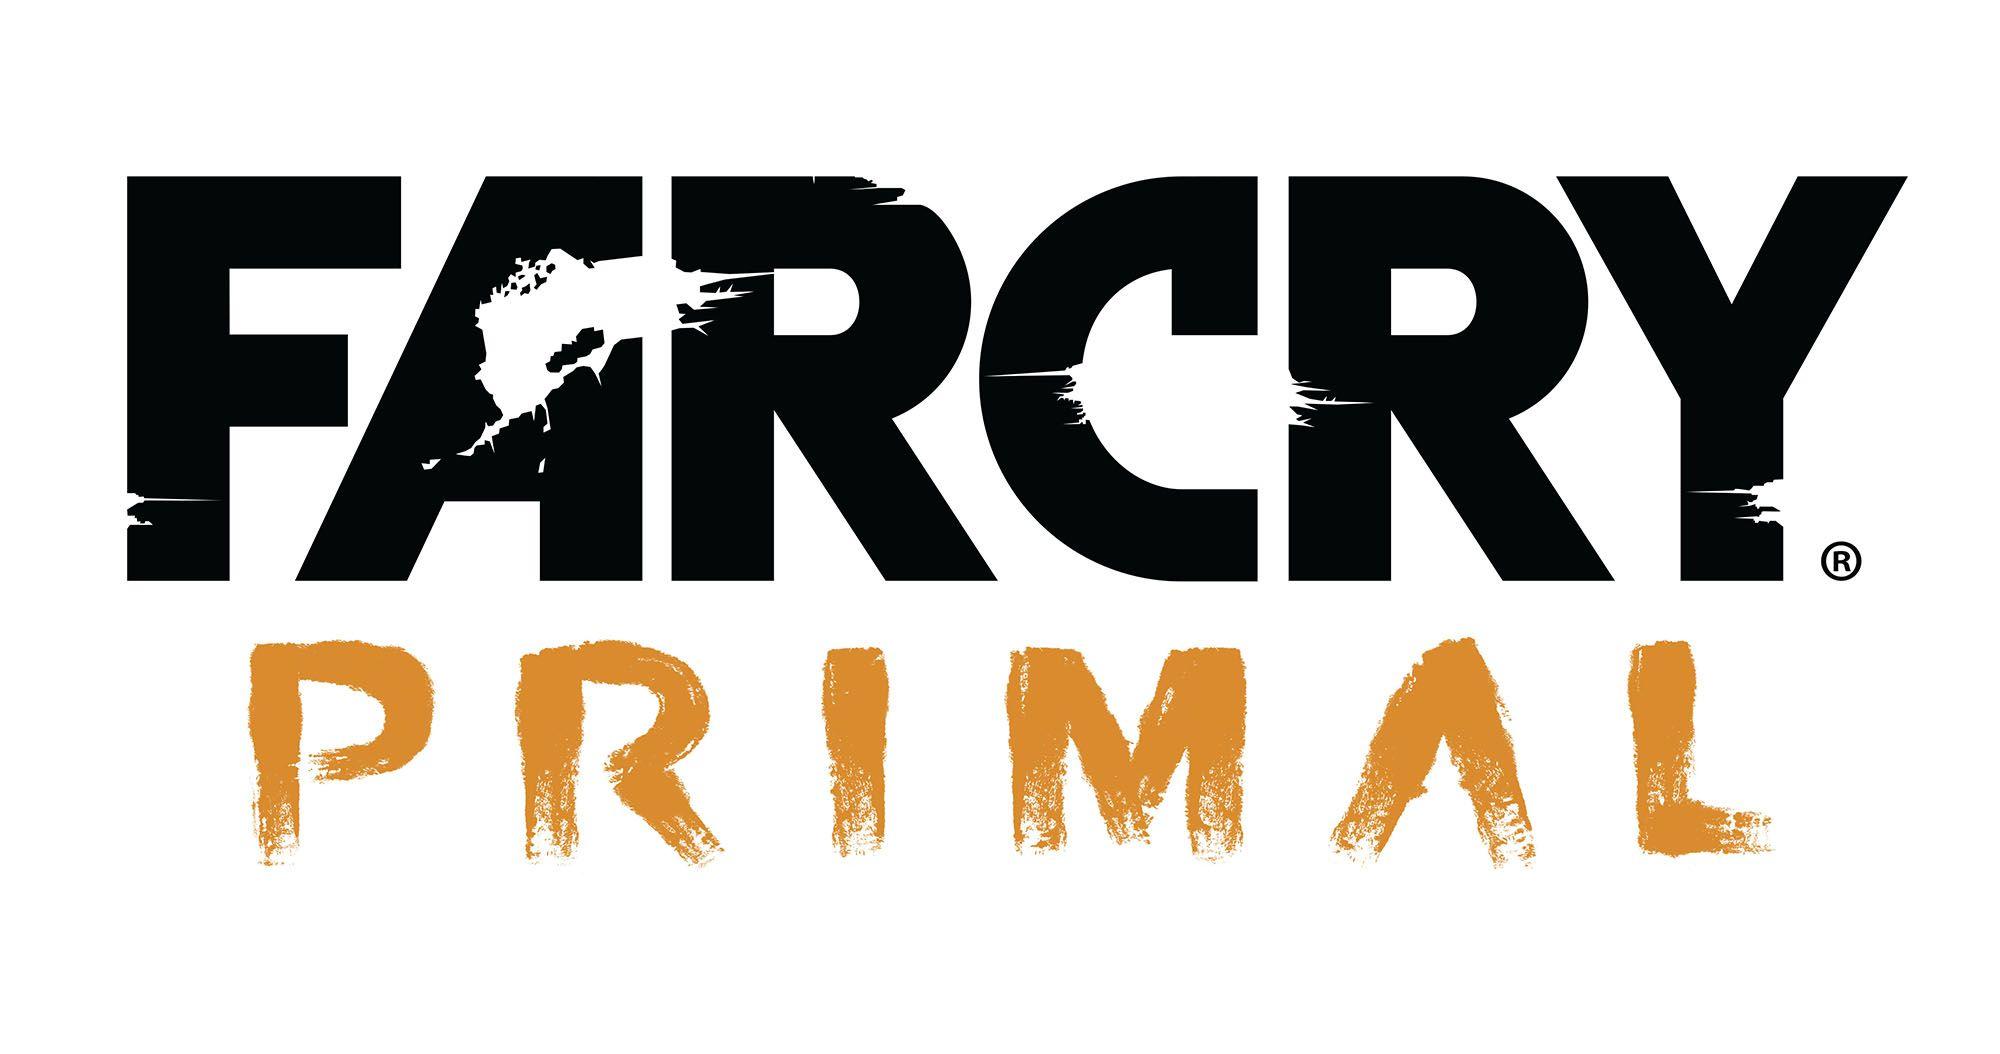 Far Cry 4 Transparent Logo - Image - 1444149242-far-cry-primal-logo.jpg | Logopedia | FANDOM ...